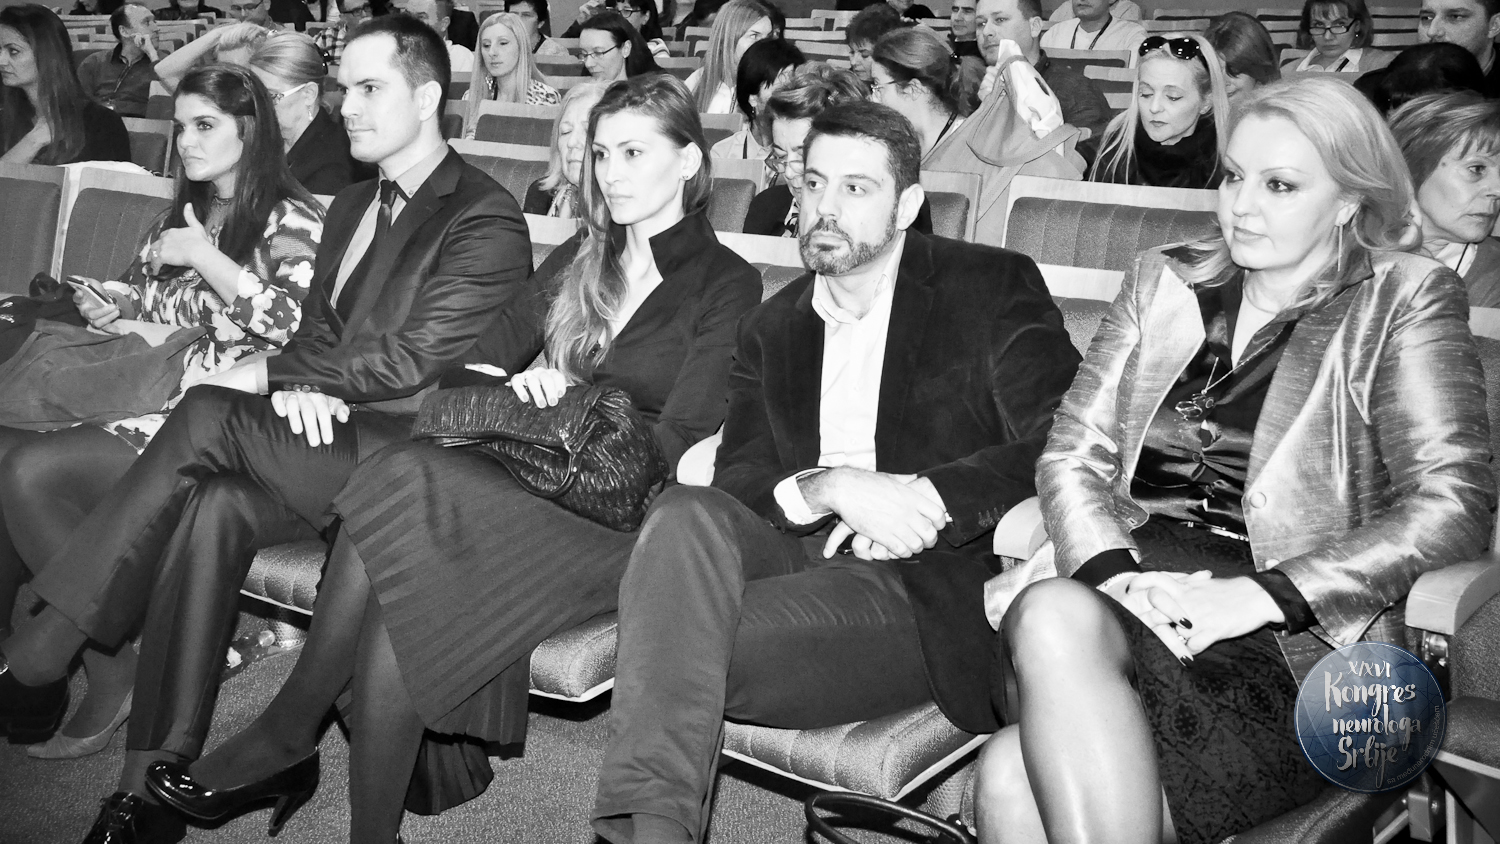 X/XVI Kongres neurologa Srbije sa međunarodnim učešćem